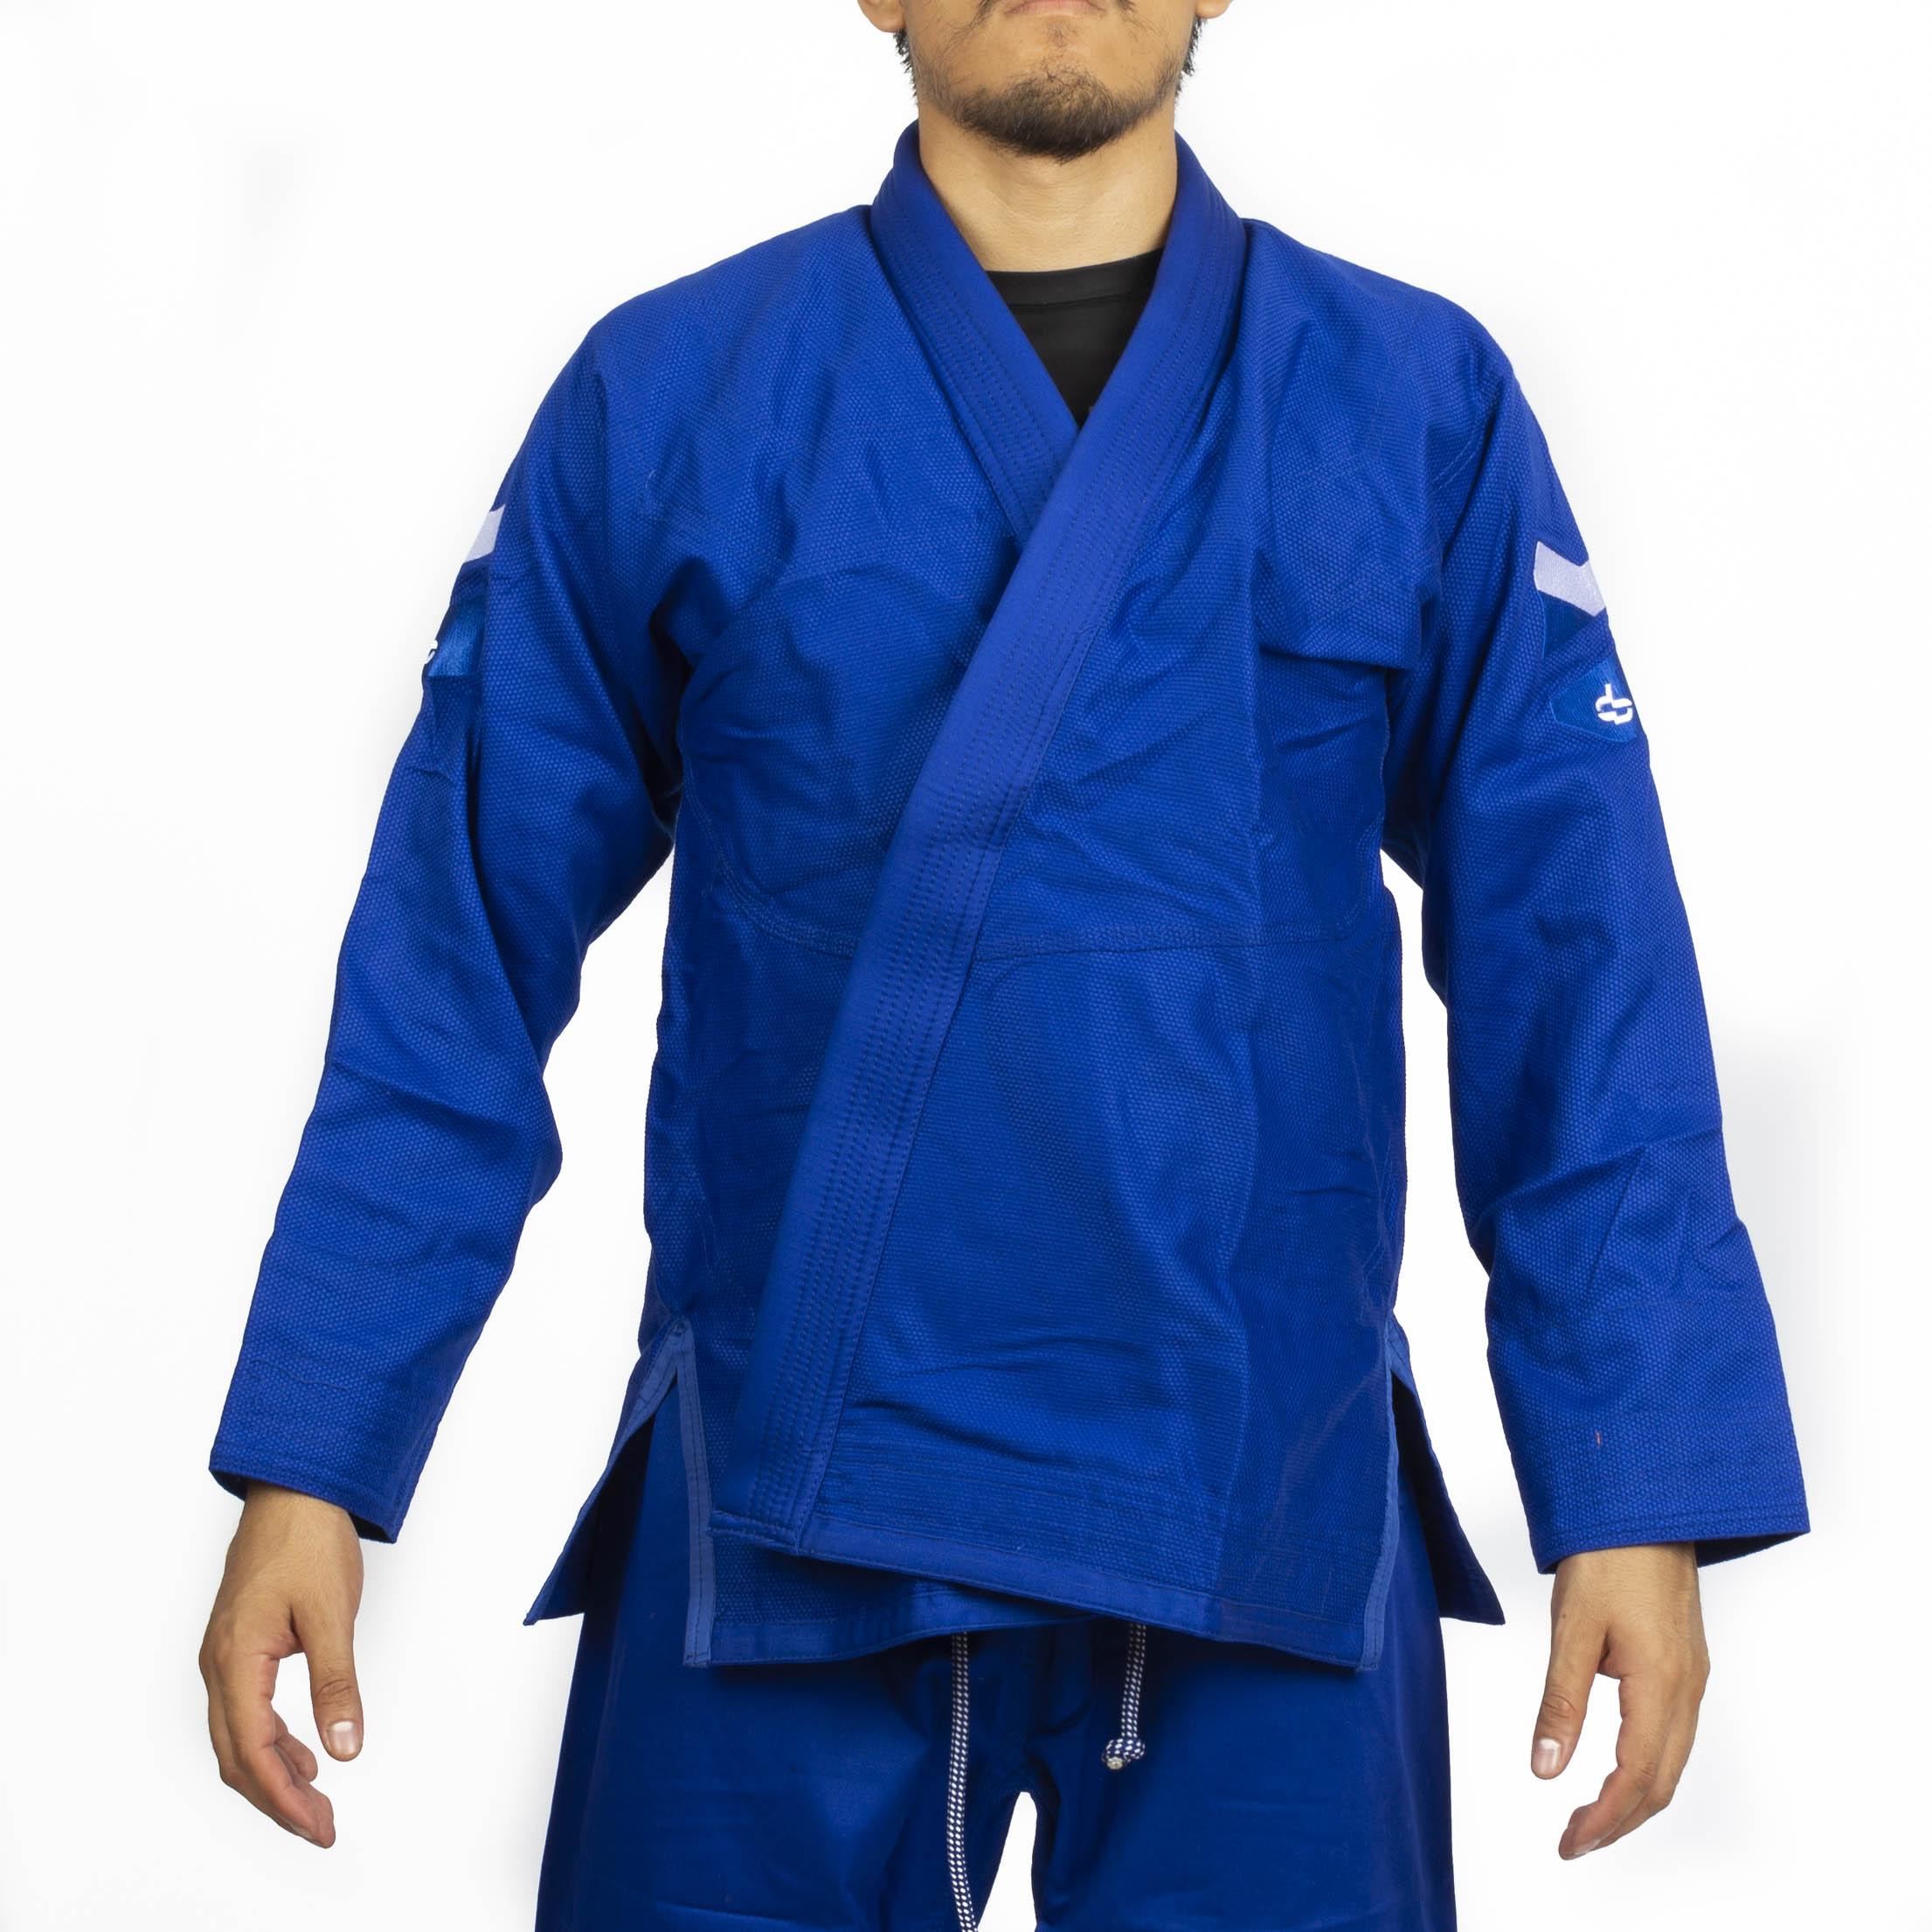 Kimono de Jiujitsu Hyperfly -  Hyperlyte 2.0  Azul - 100% Algodón